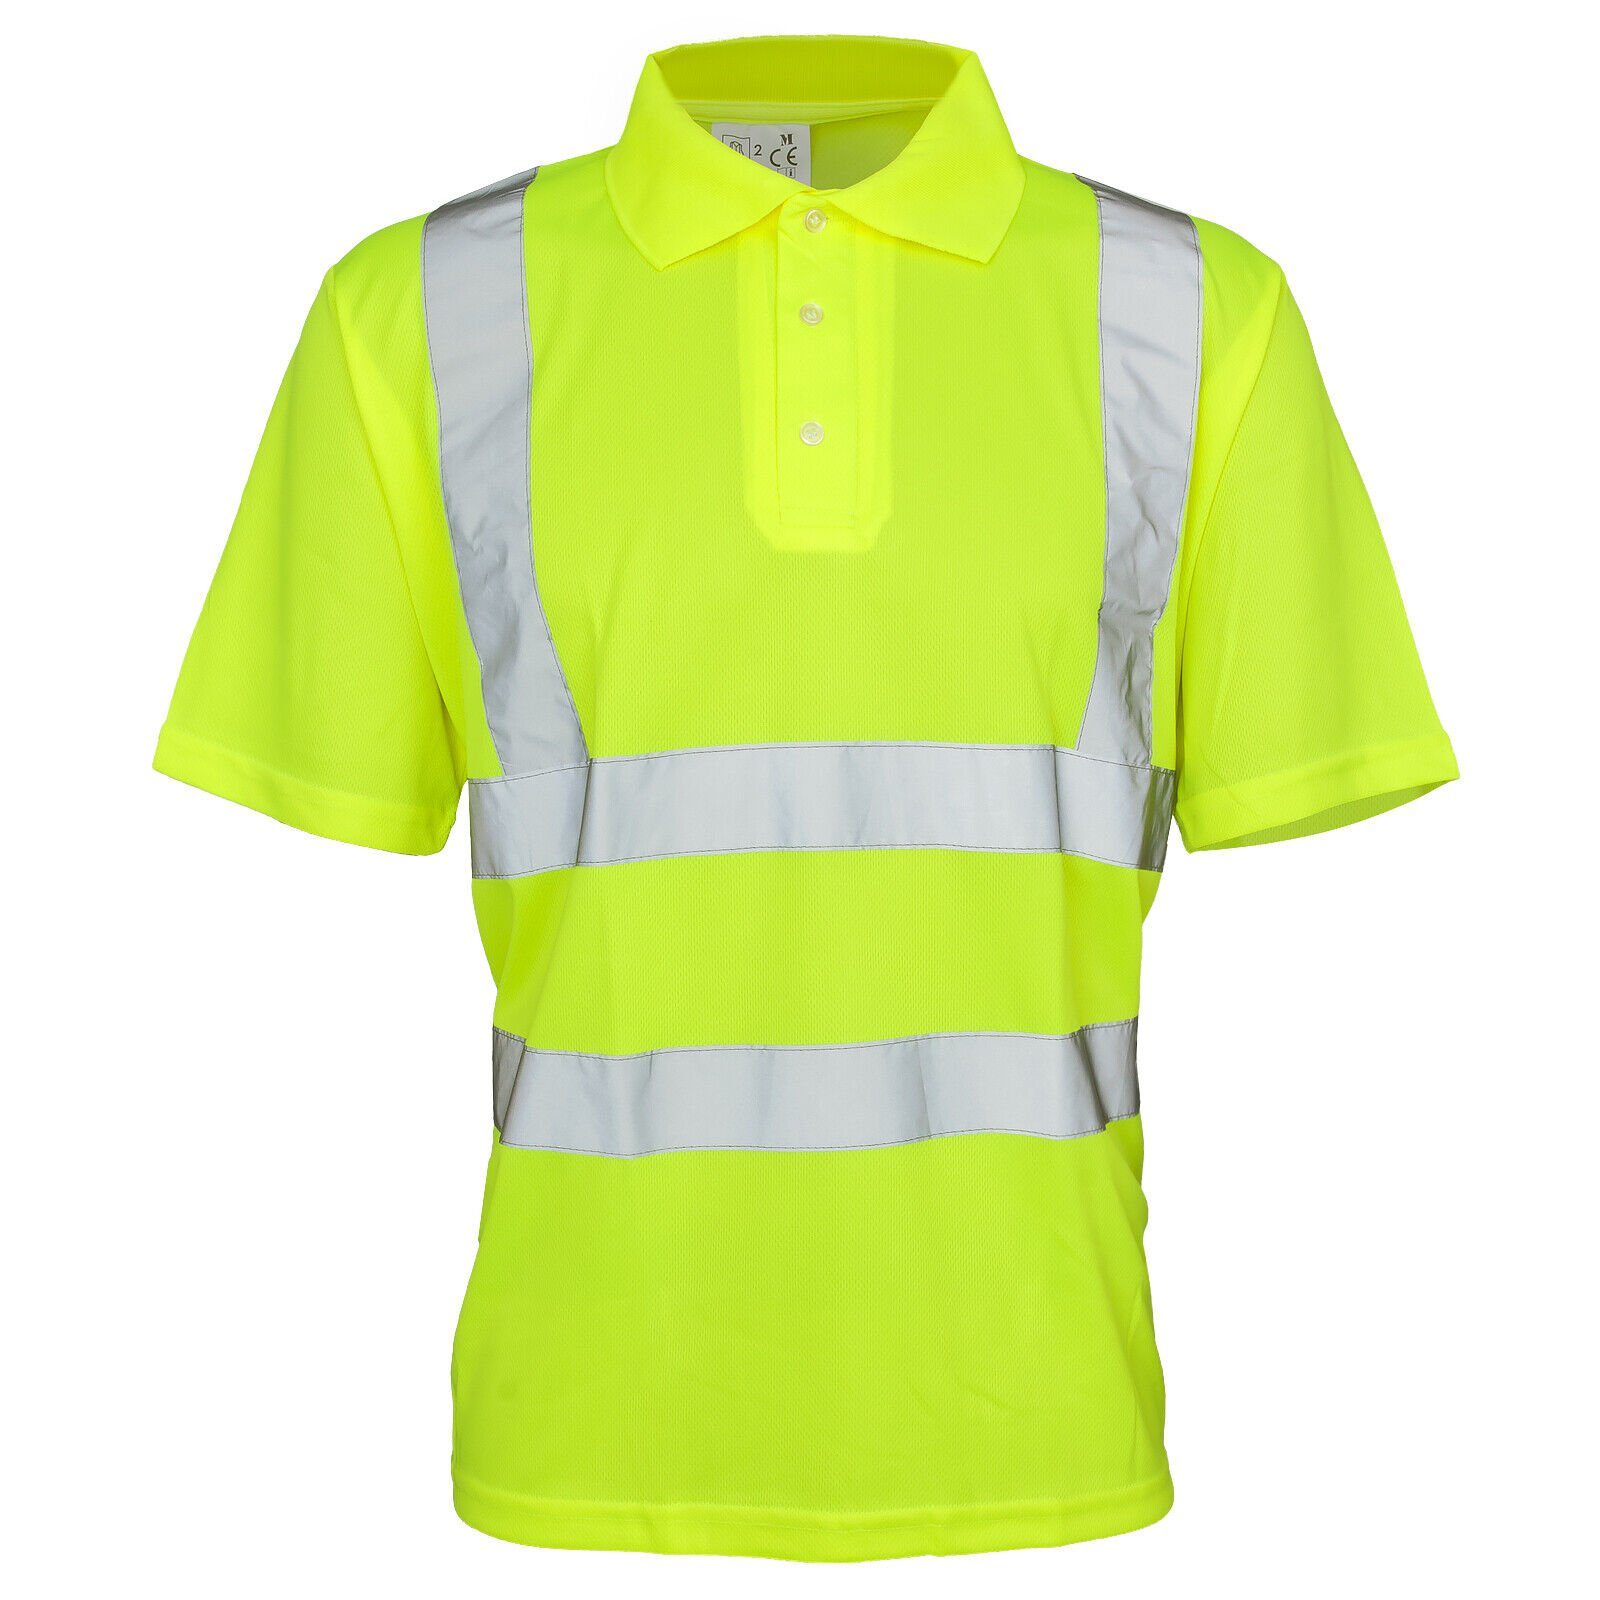 Consorte Funktionsshirt Warnshirt Warnschutz Polo-Shirt T-Shirt Hi-Viz Kurzarm gelb